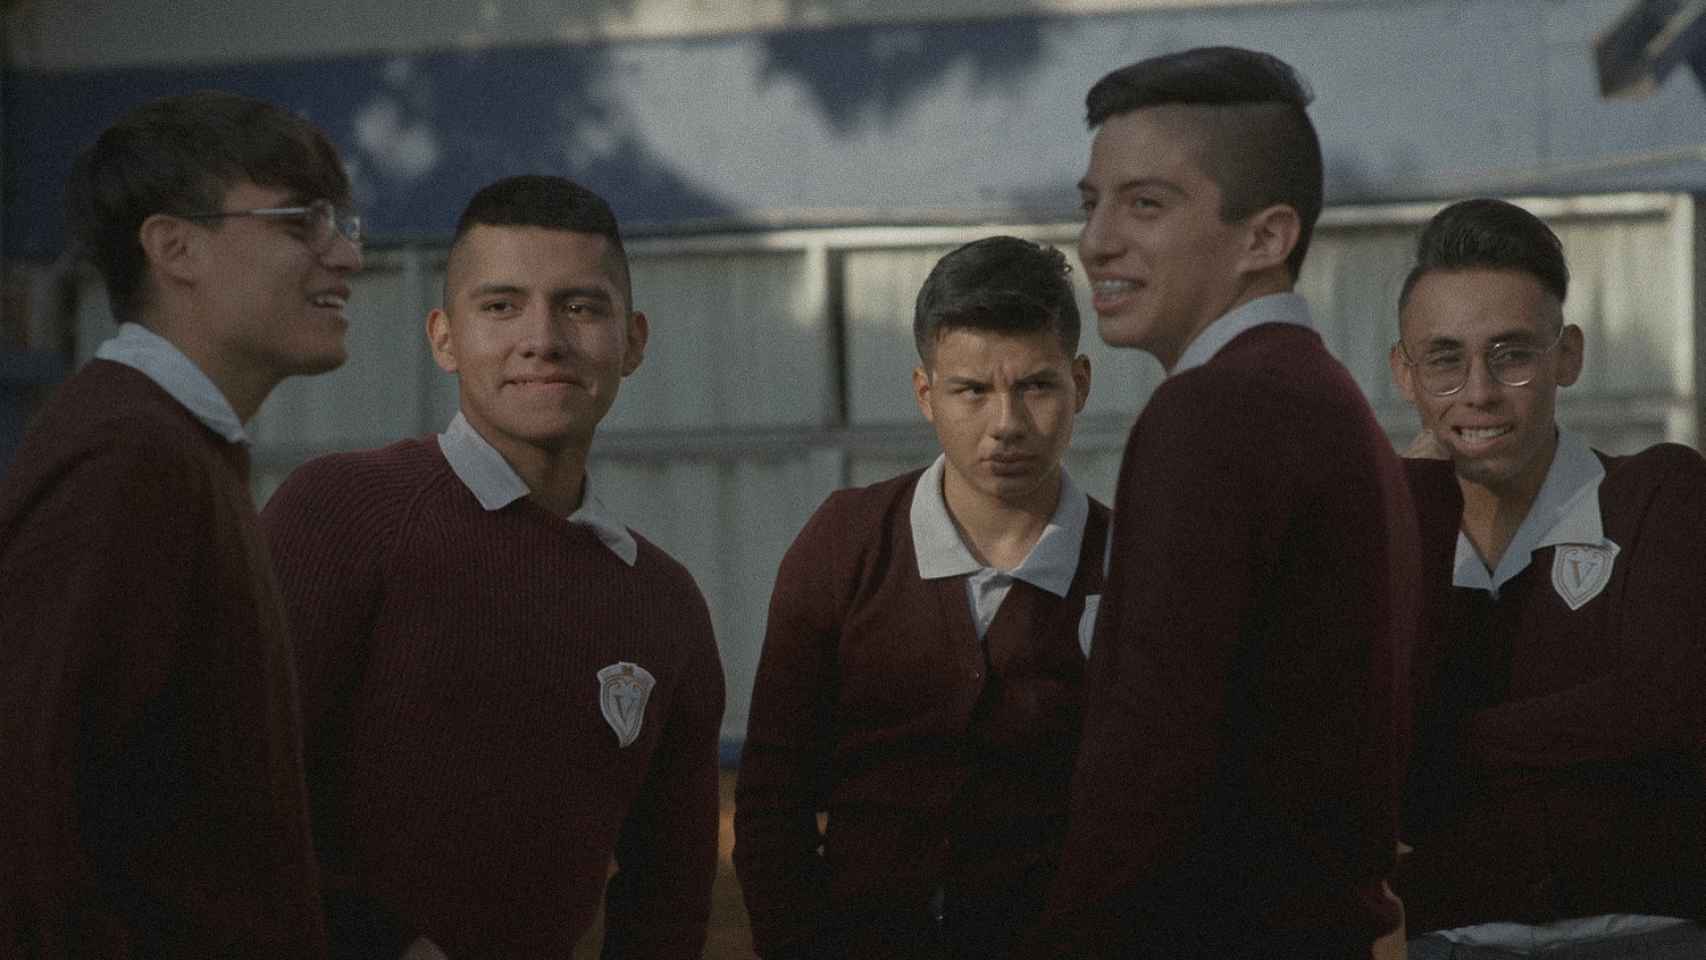 Los alumnos del Colegio Villaseñor de la película